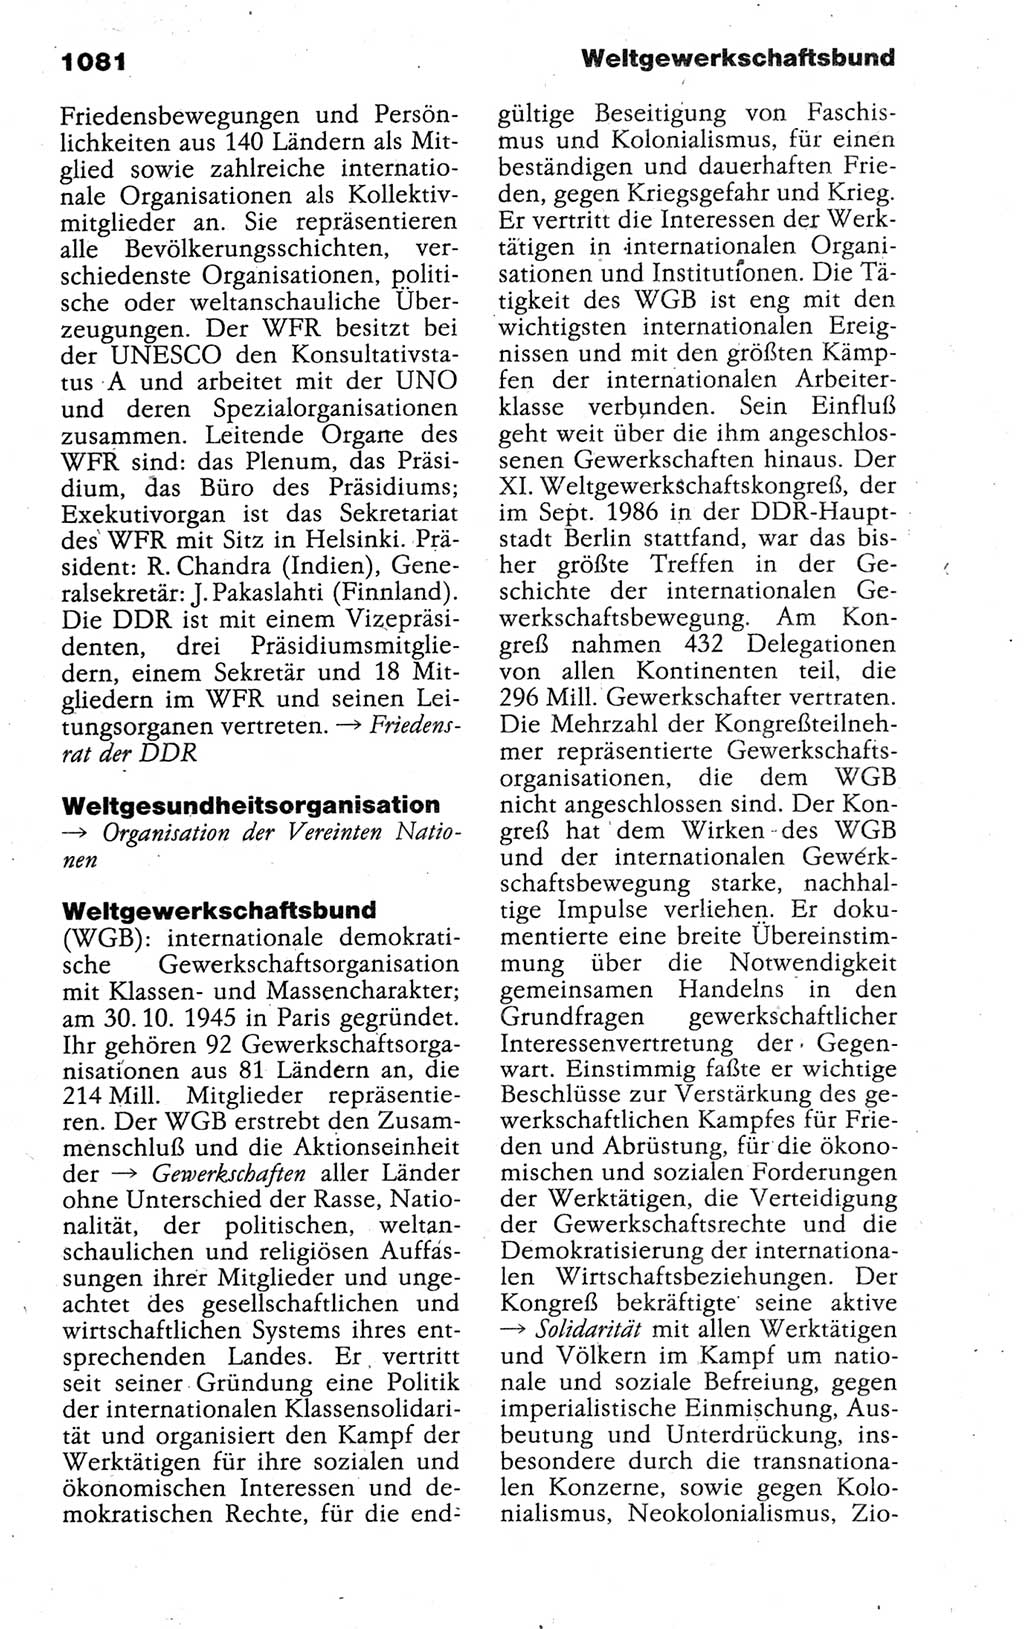 Kleines politisches Wörterbuch [Deutsche Demokratische Republik (DDR)] 1988, Seite 1081 (Kl. pol. Wb. DDR 1988, S. 1081)